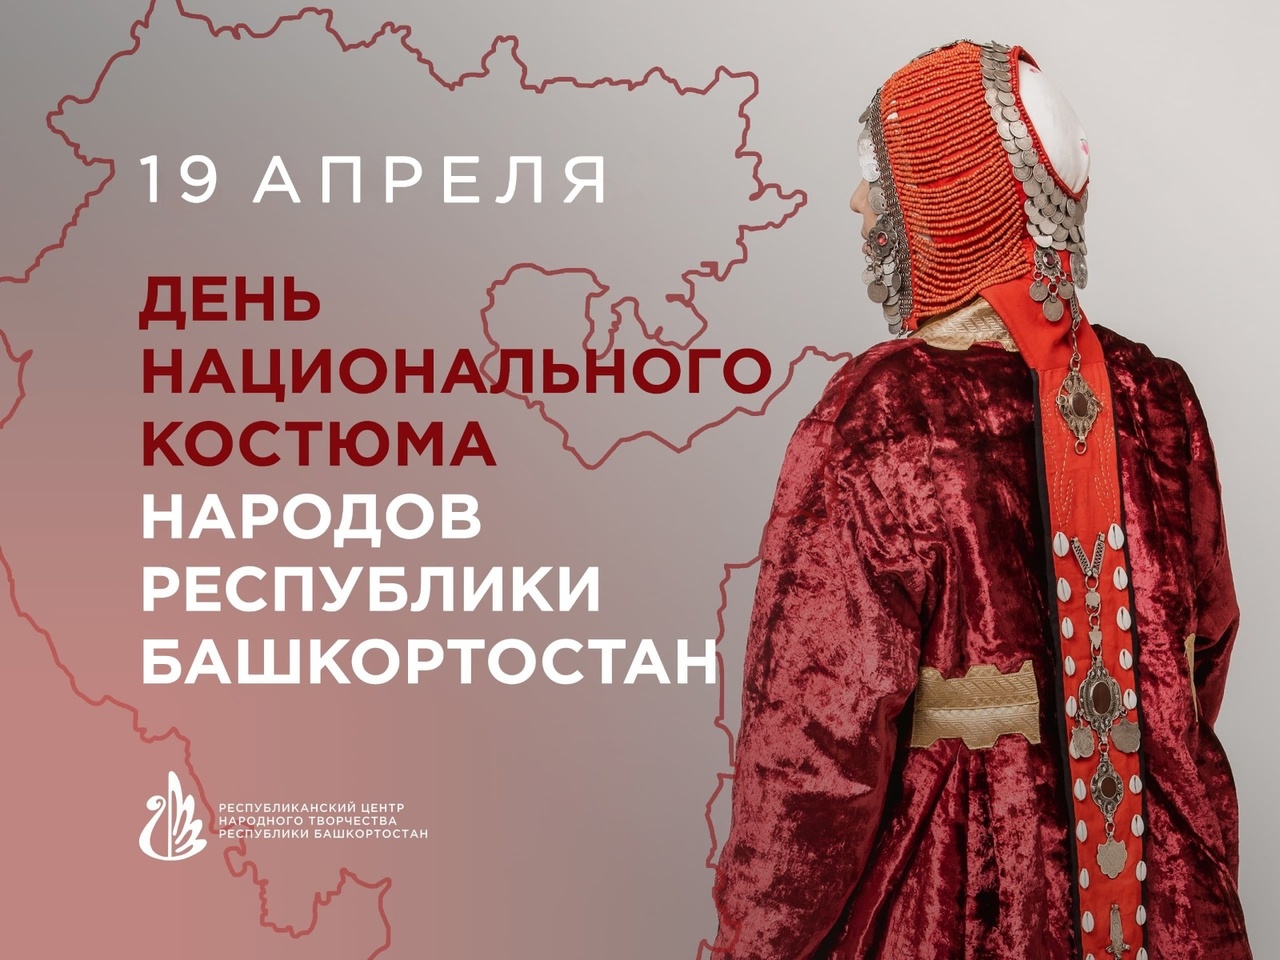 С днем национального костюма народов Республики Башкортостан!